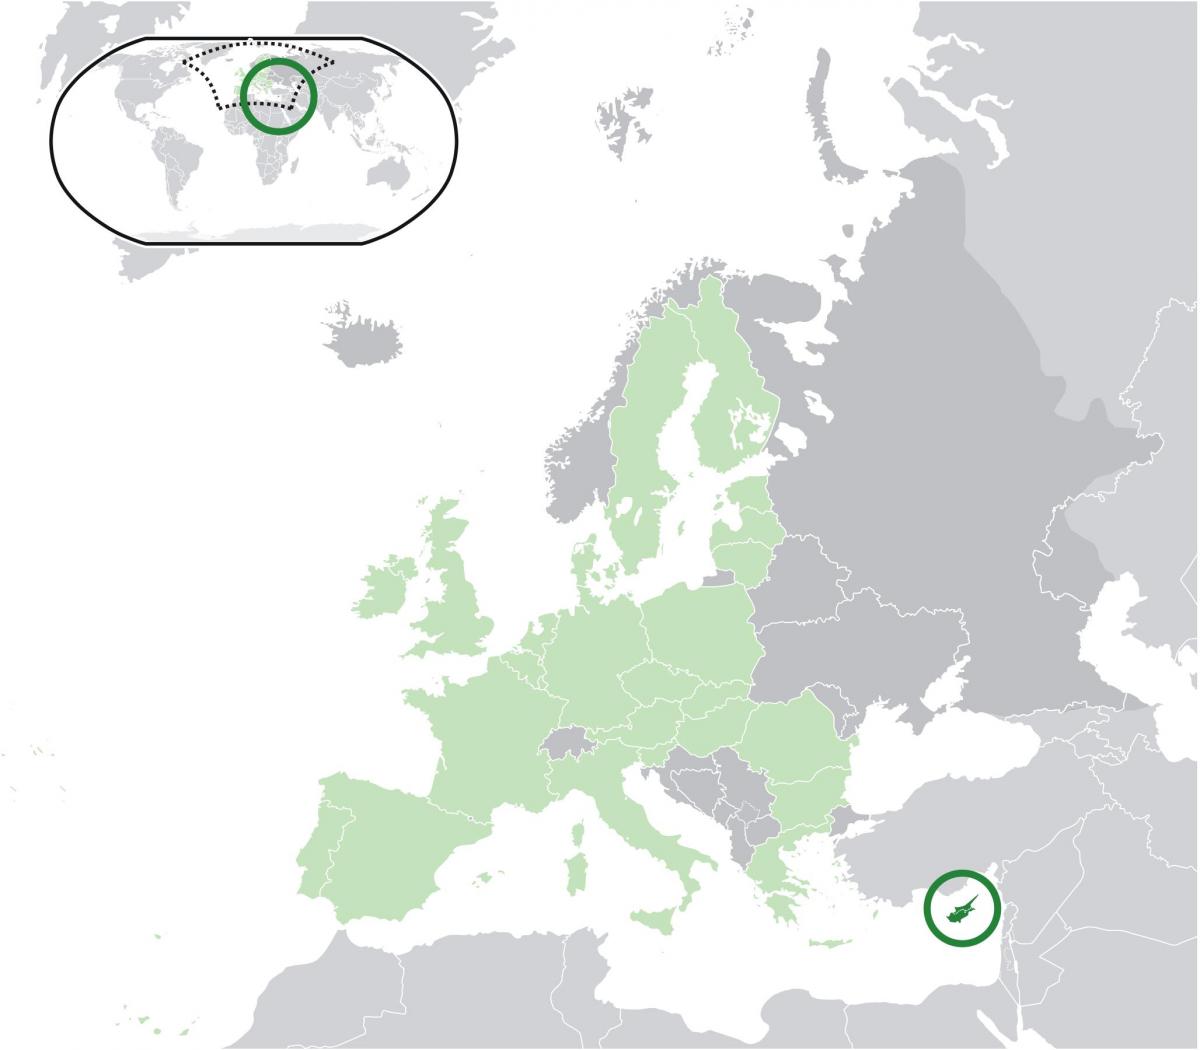 ევროპის რუკა გვიჩვენებს, კვიპროსი